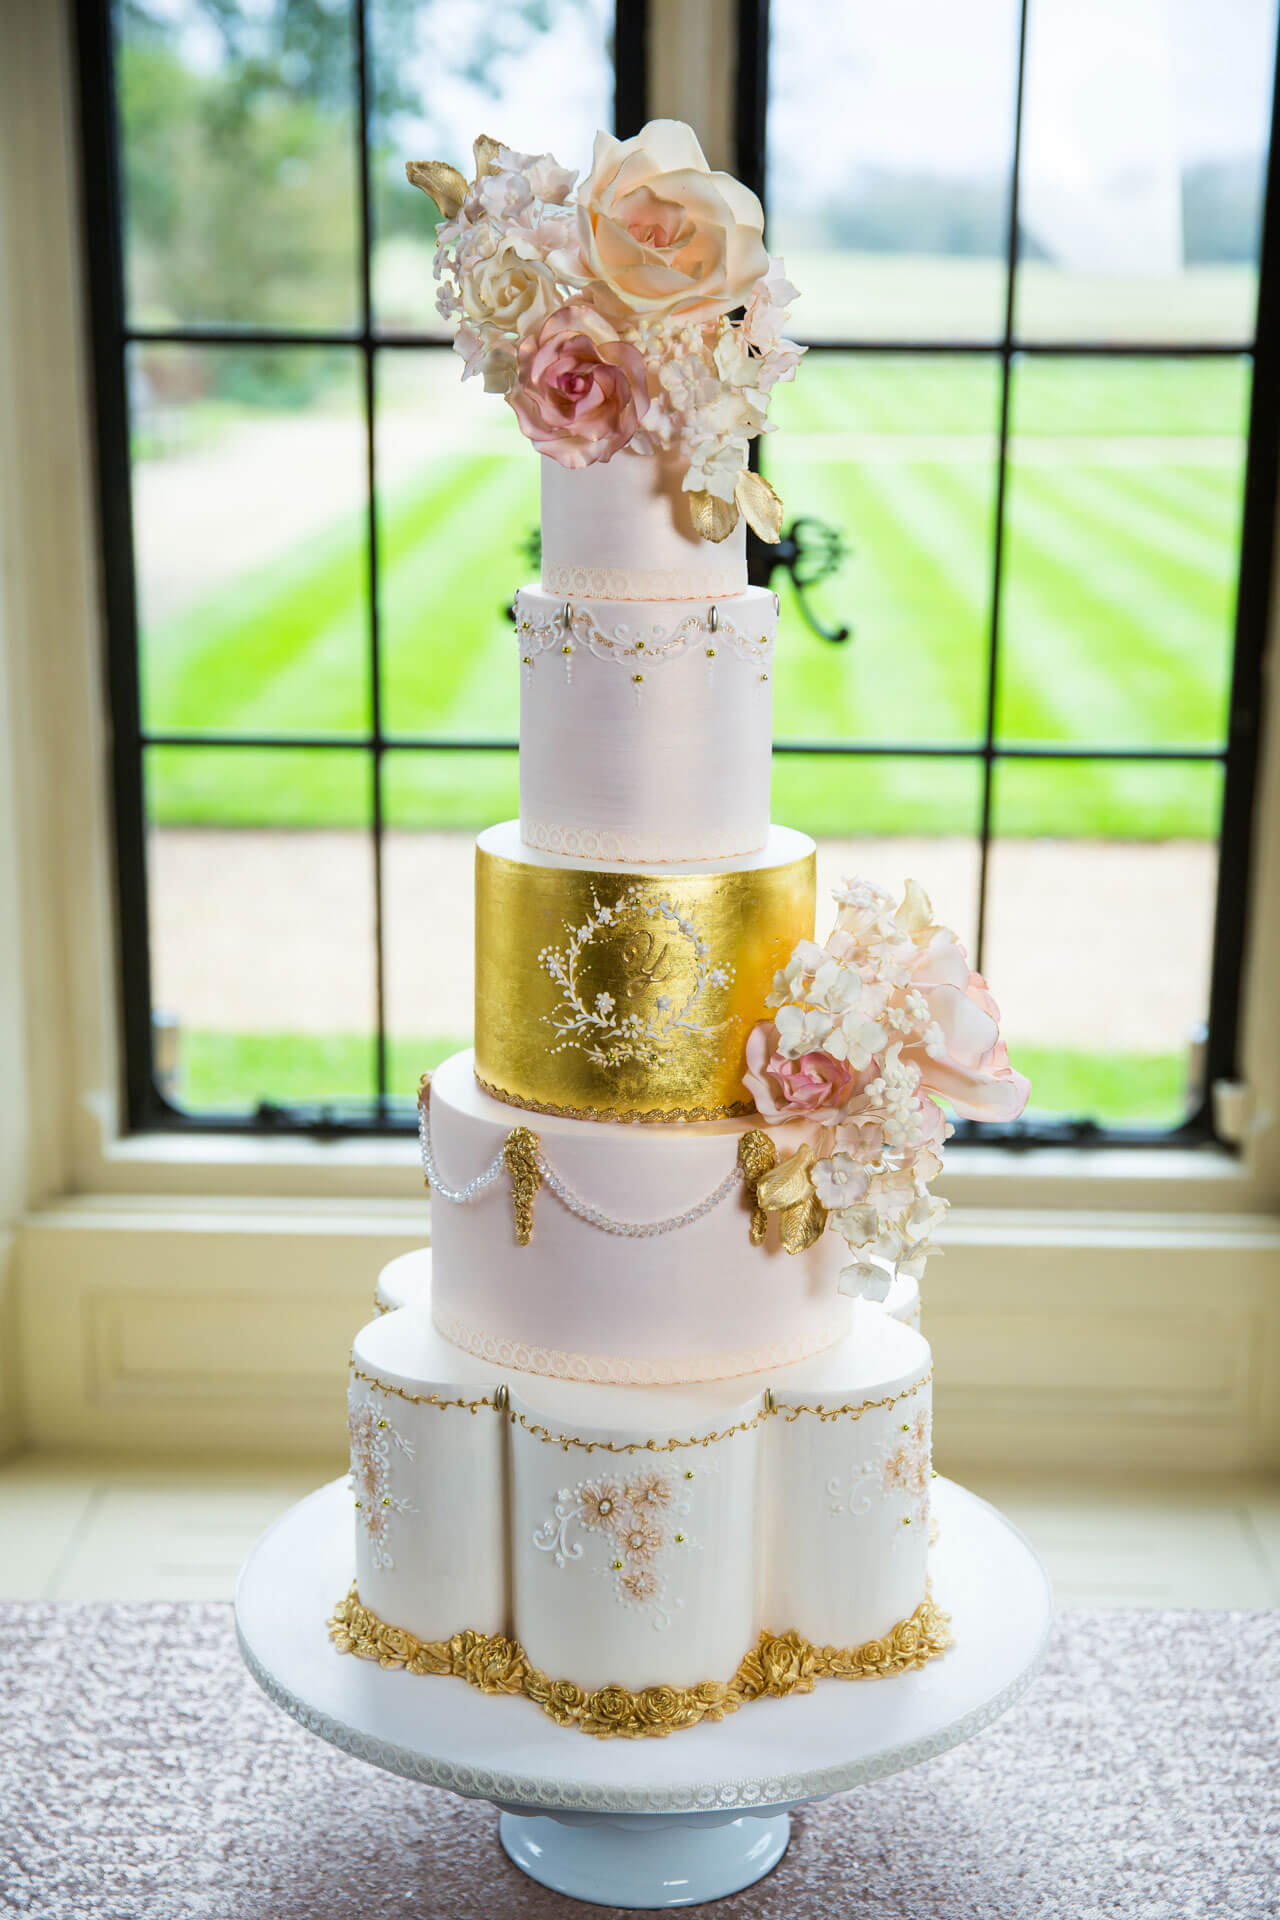 Custom Luxury Wedding Cakes By Yevnig The Evelina The Elvetham Hotel Jacques Lloyd Photography The Evelina